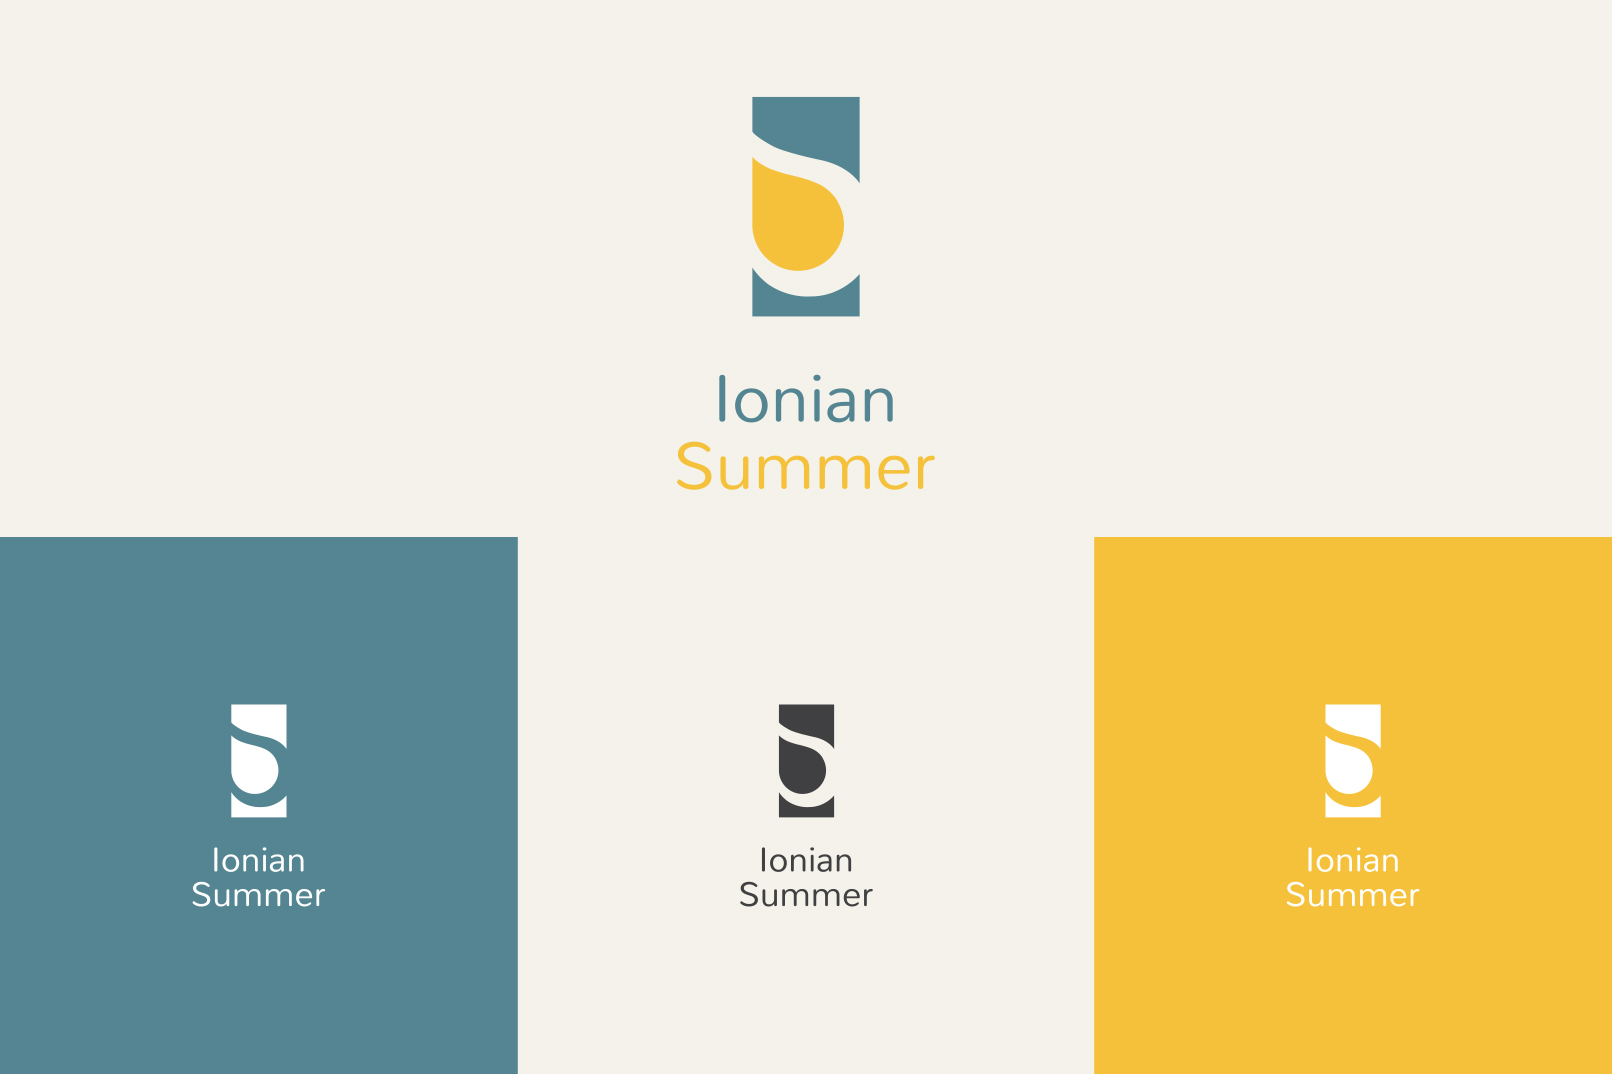 motivar portfolio branding ionian summer logo 1